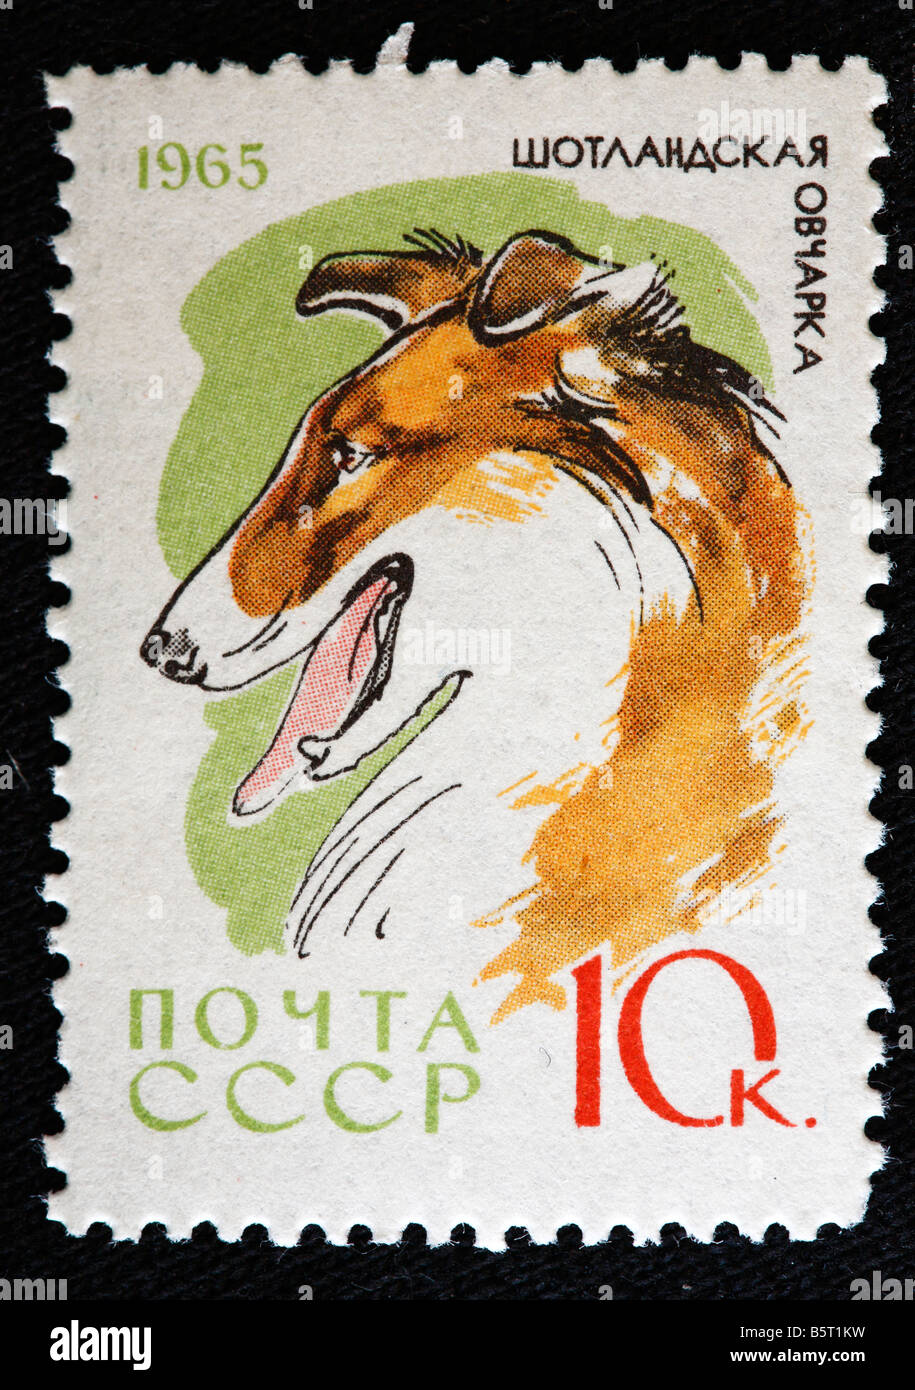 Scotch Collie, timbre-poste, URSS (Russie), 1965 Banque D'Images